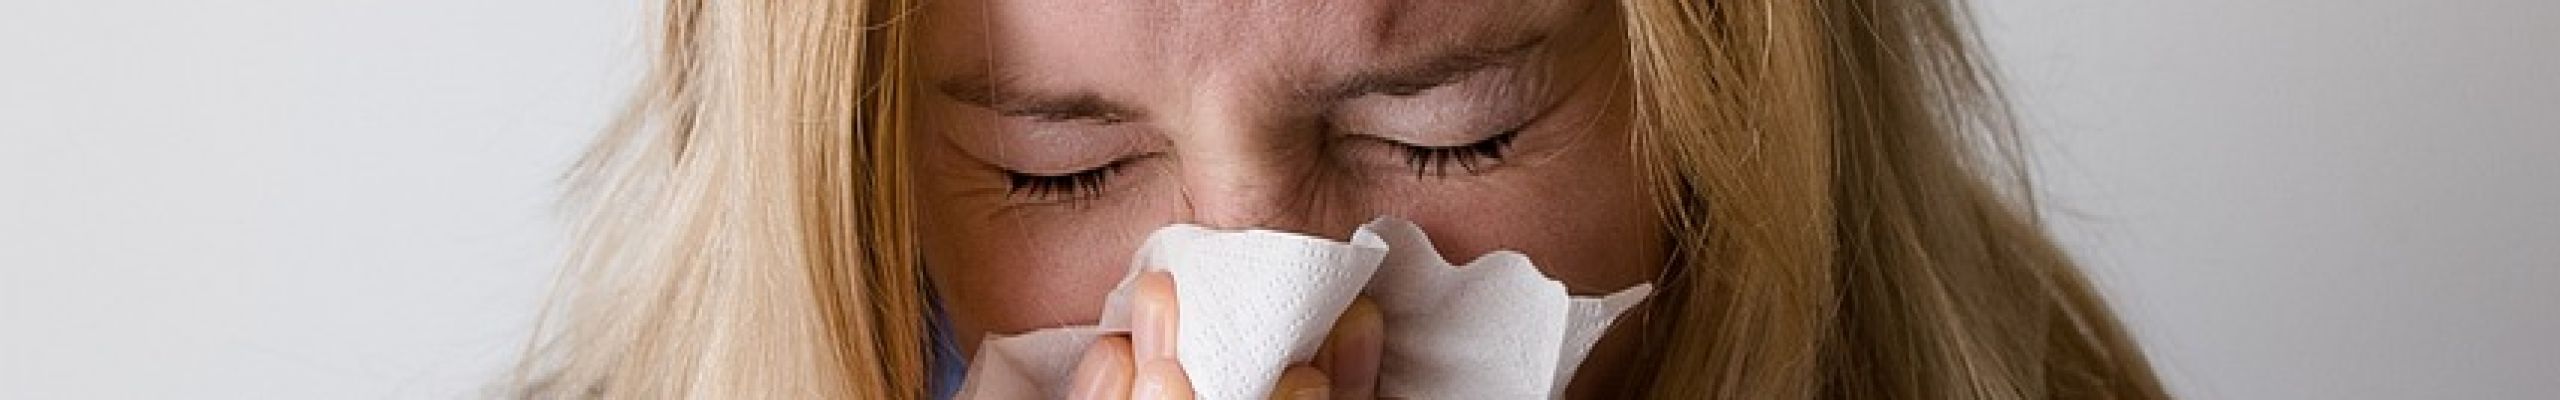 Αλλεργία: Αλλαγές που θα σας βοηθήσουν στον ύπνο